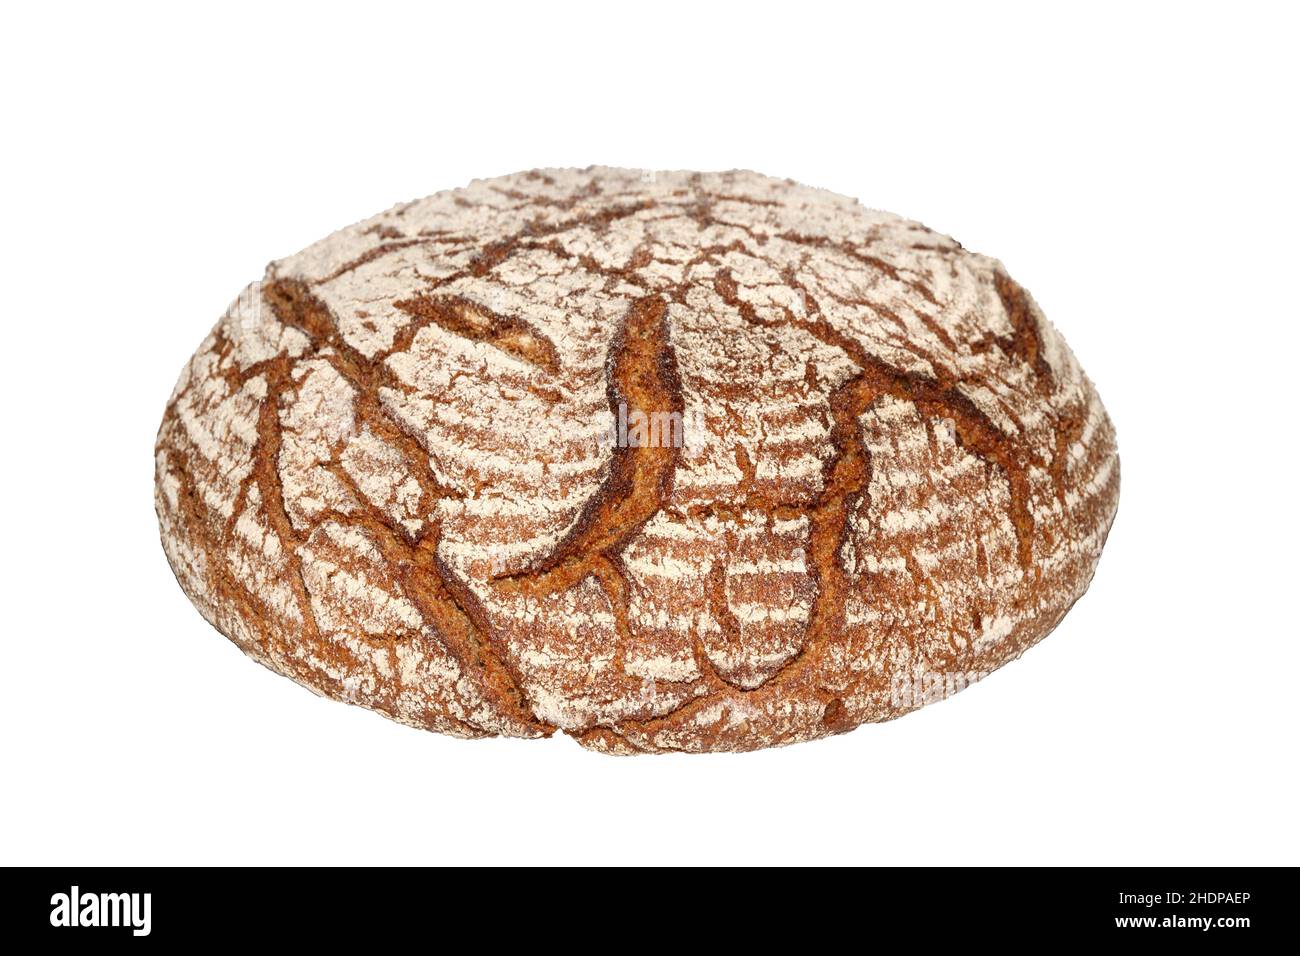 loaf, rye bread, loafs, rye breads, rye-bread Stock Photo